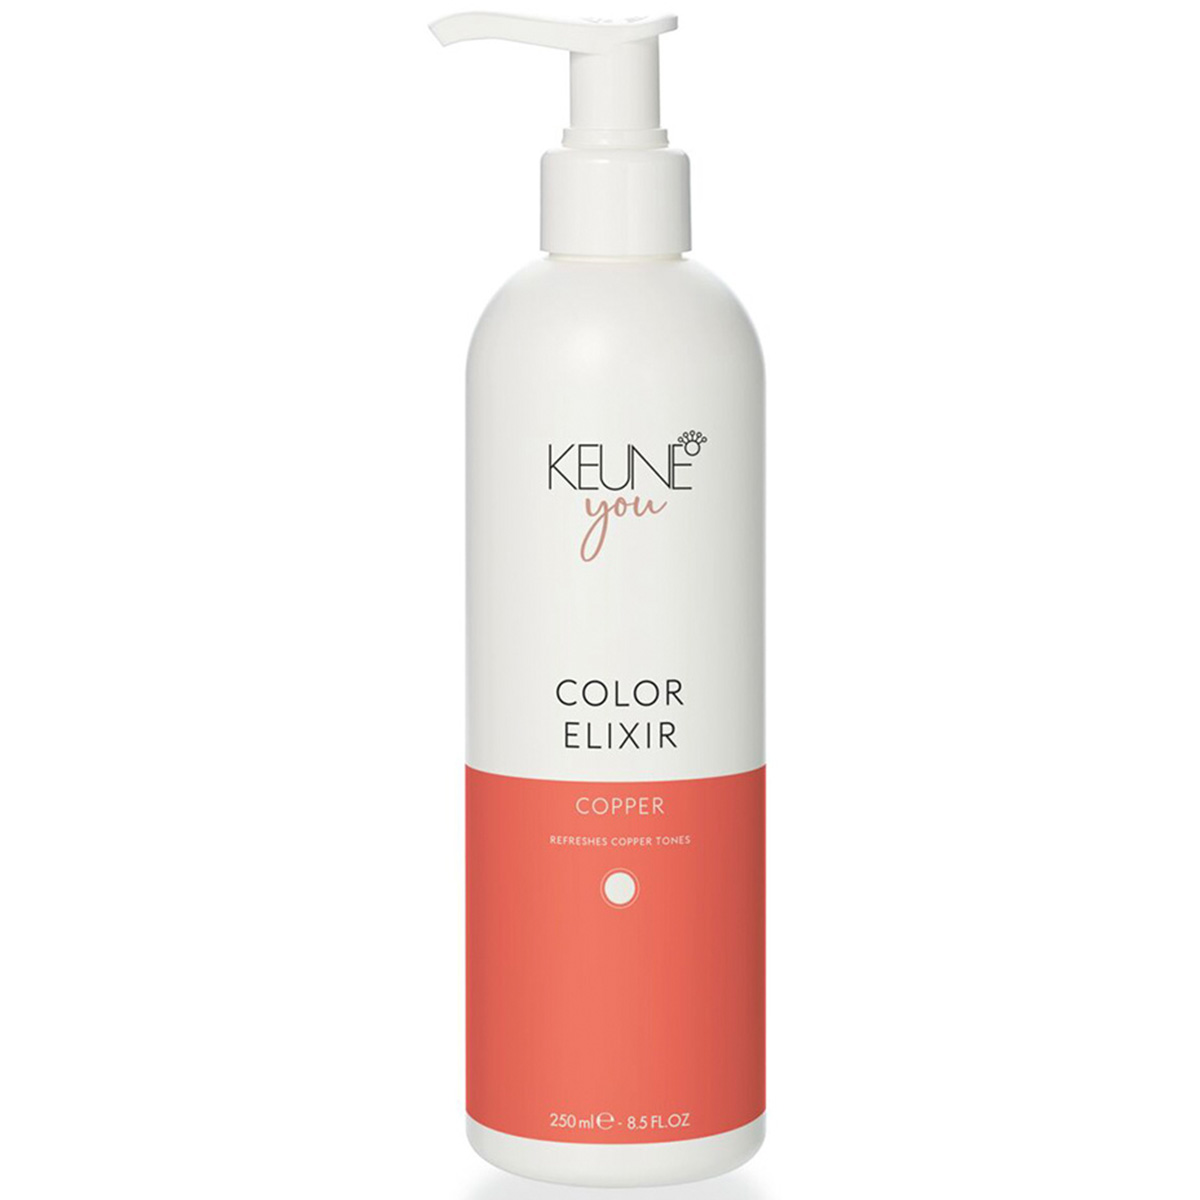 Keune Эликсир для натуральных и окрашенных рыжих волос Медный Color Elixir Cooper, 250 мл (Keune, You)